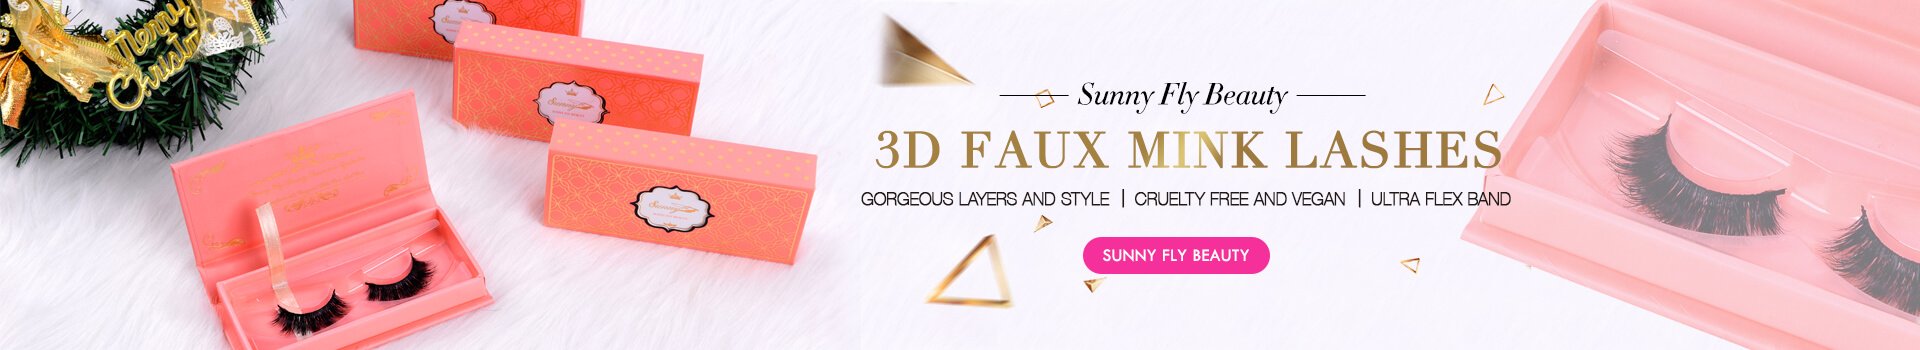 3D Faux Mink Lashes SD21